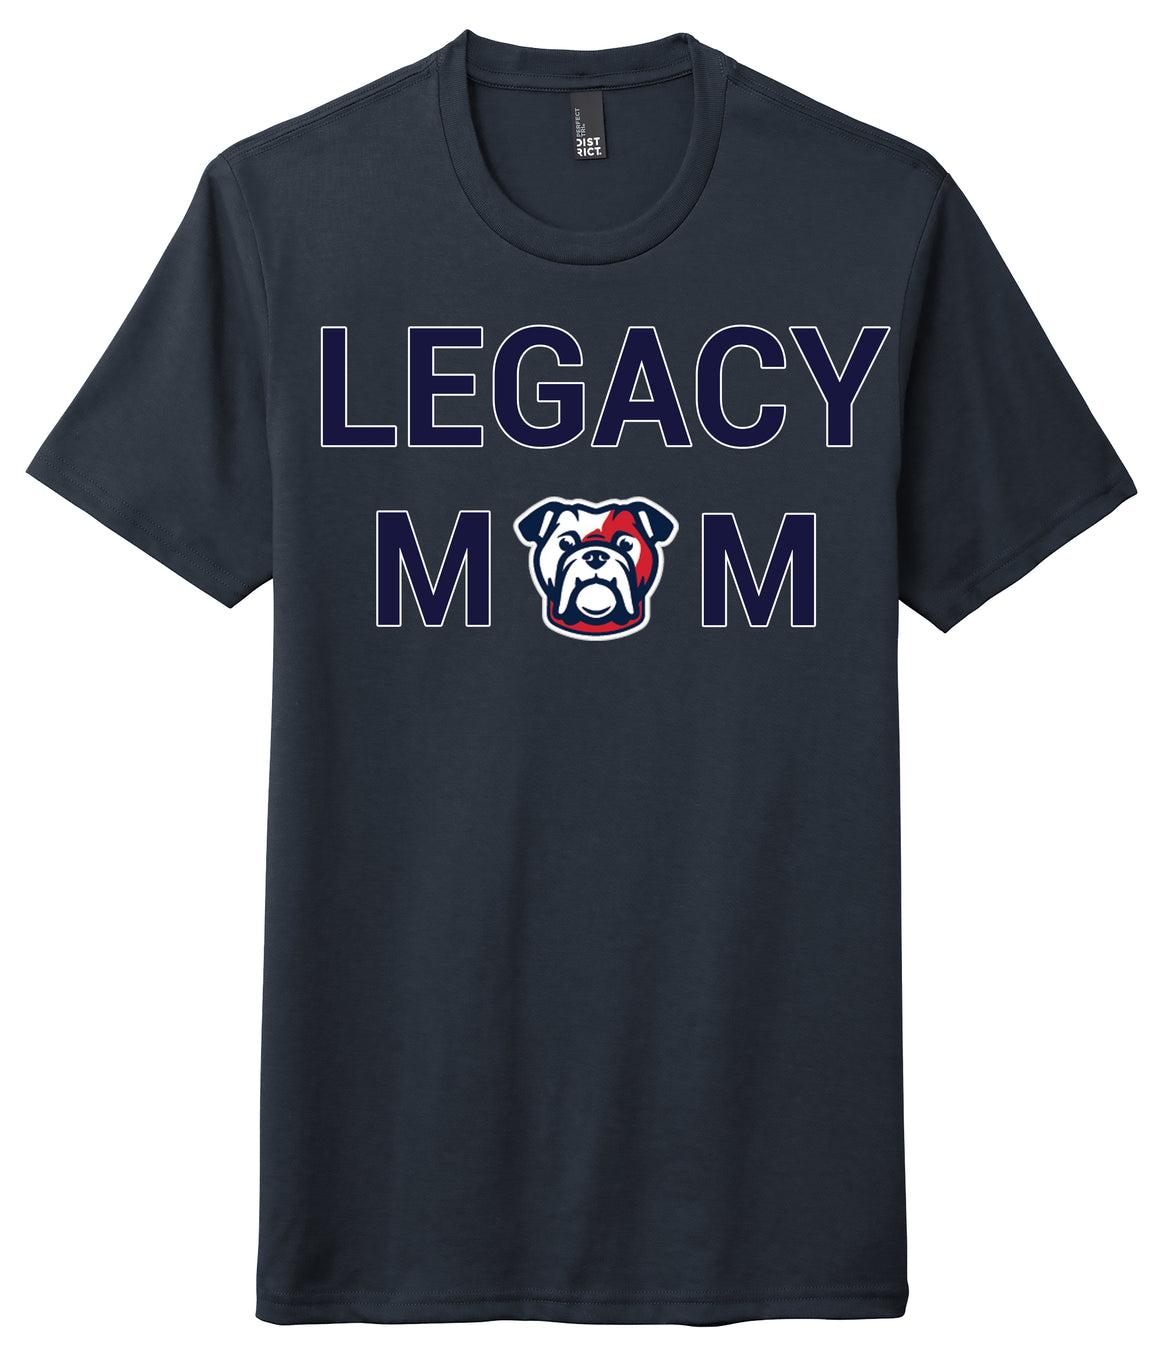 Legacy Traditional School Goodyear - Mom Shirt